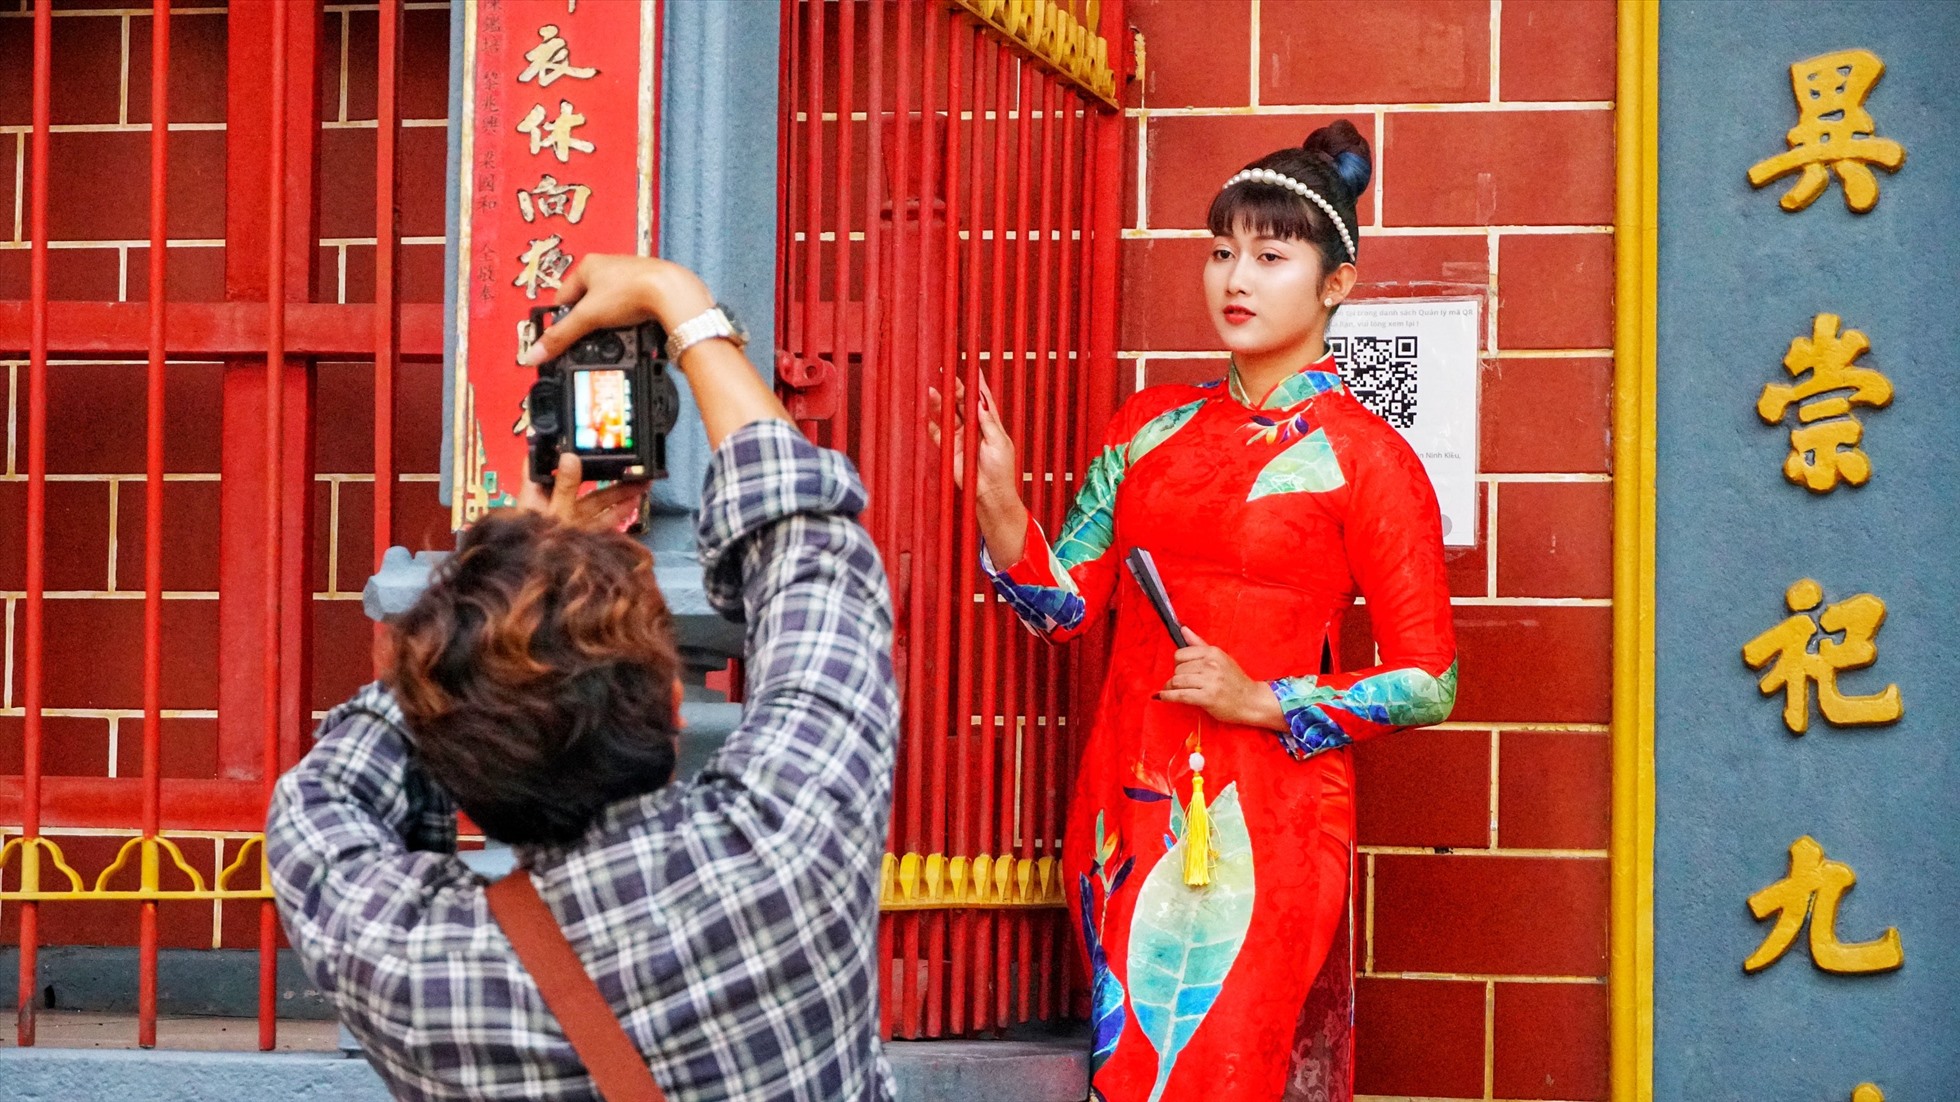 Anh Trần Nhật Duy (thợ chụp ảnh đến từ TP. Long Xuyên, tỉnh An Giang) chia sẻ, năm nay khách bắt đầu đặt lịch chụp ảnh Tết của anh từ khoảng giữa tháng 12.2022 (dương lịch). Đối tượng khách hàng thường chụp trong dịp Tết đa phần là những người trẻ hoặc cả gia đình.